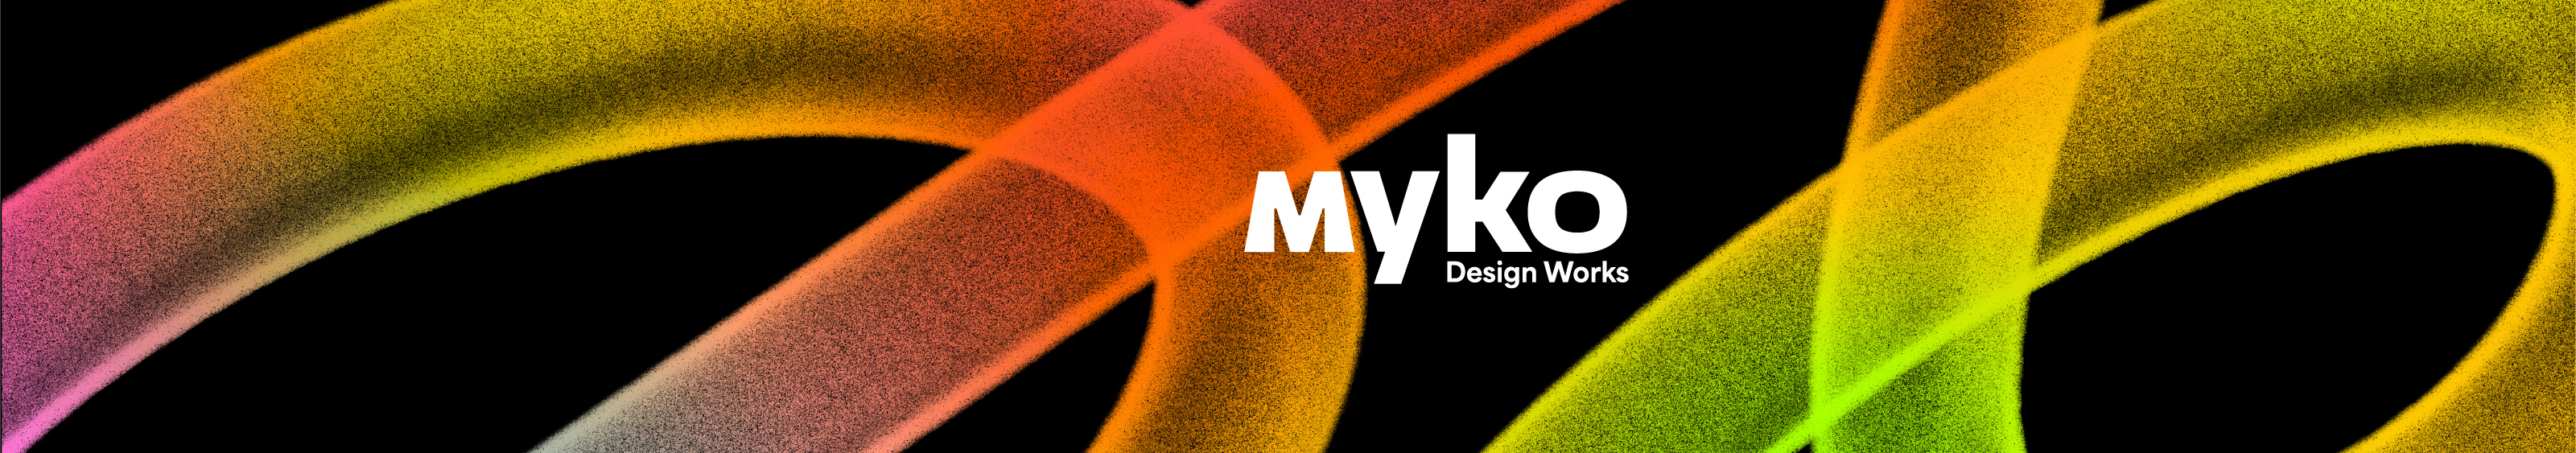 Mykola Tkachenko 🇺🇦's profile banner